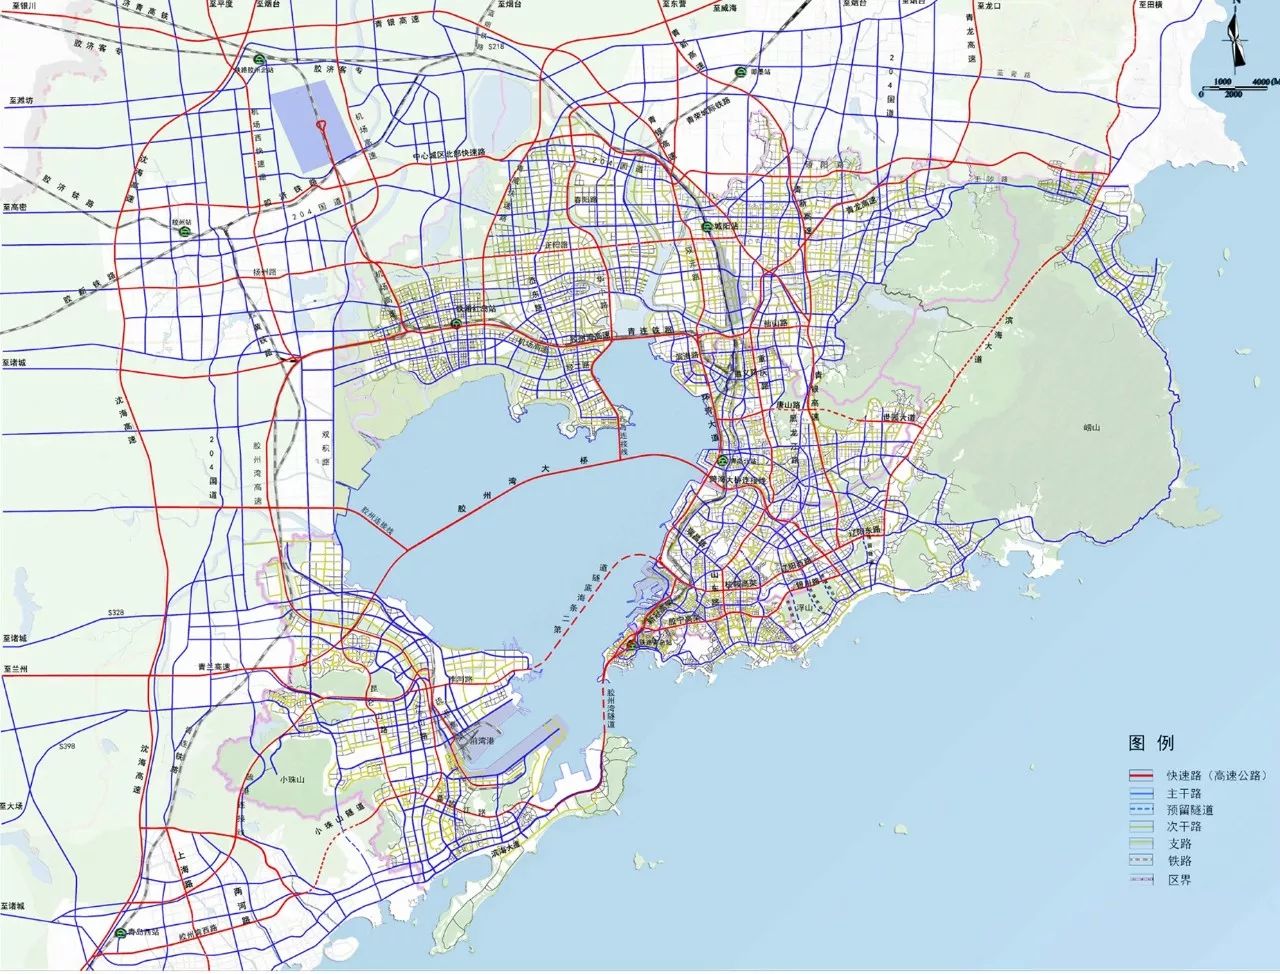 规划范围为青岛市中心城区,面积1408k.